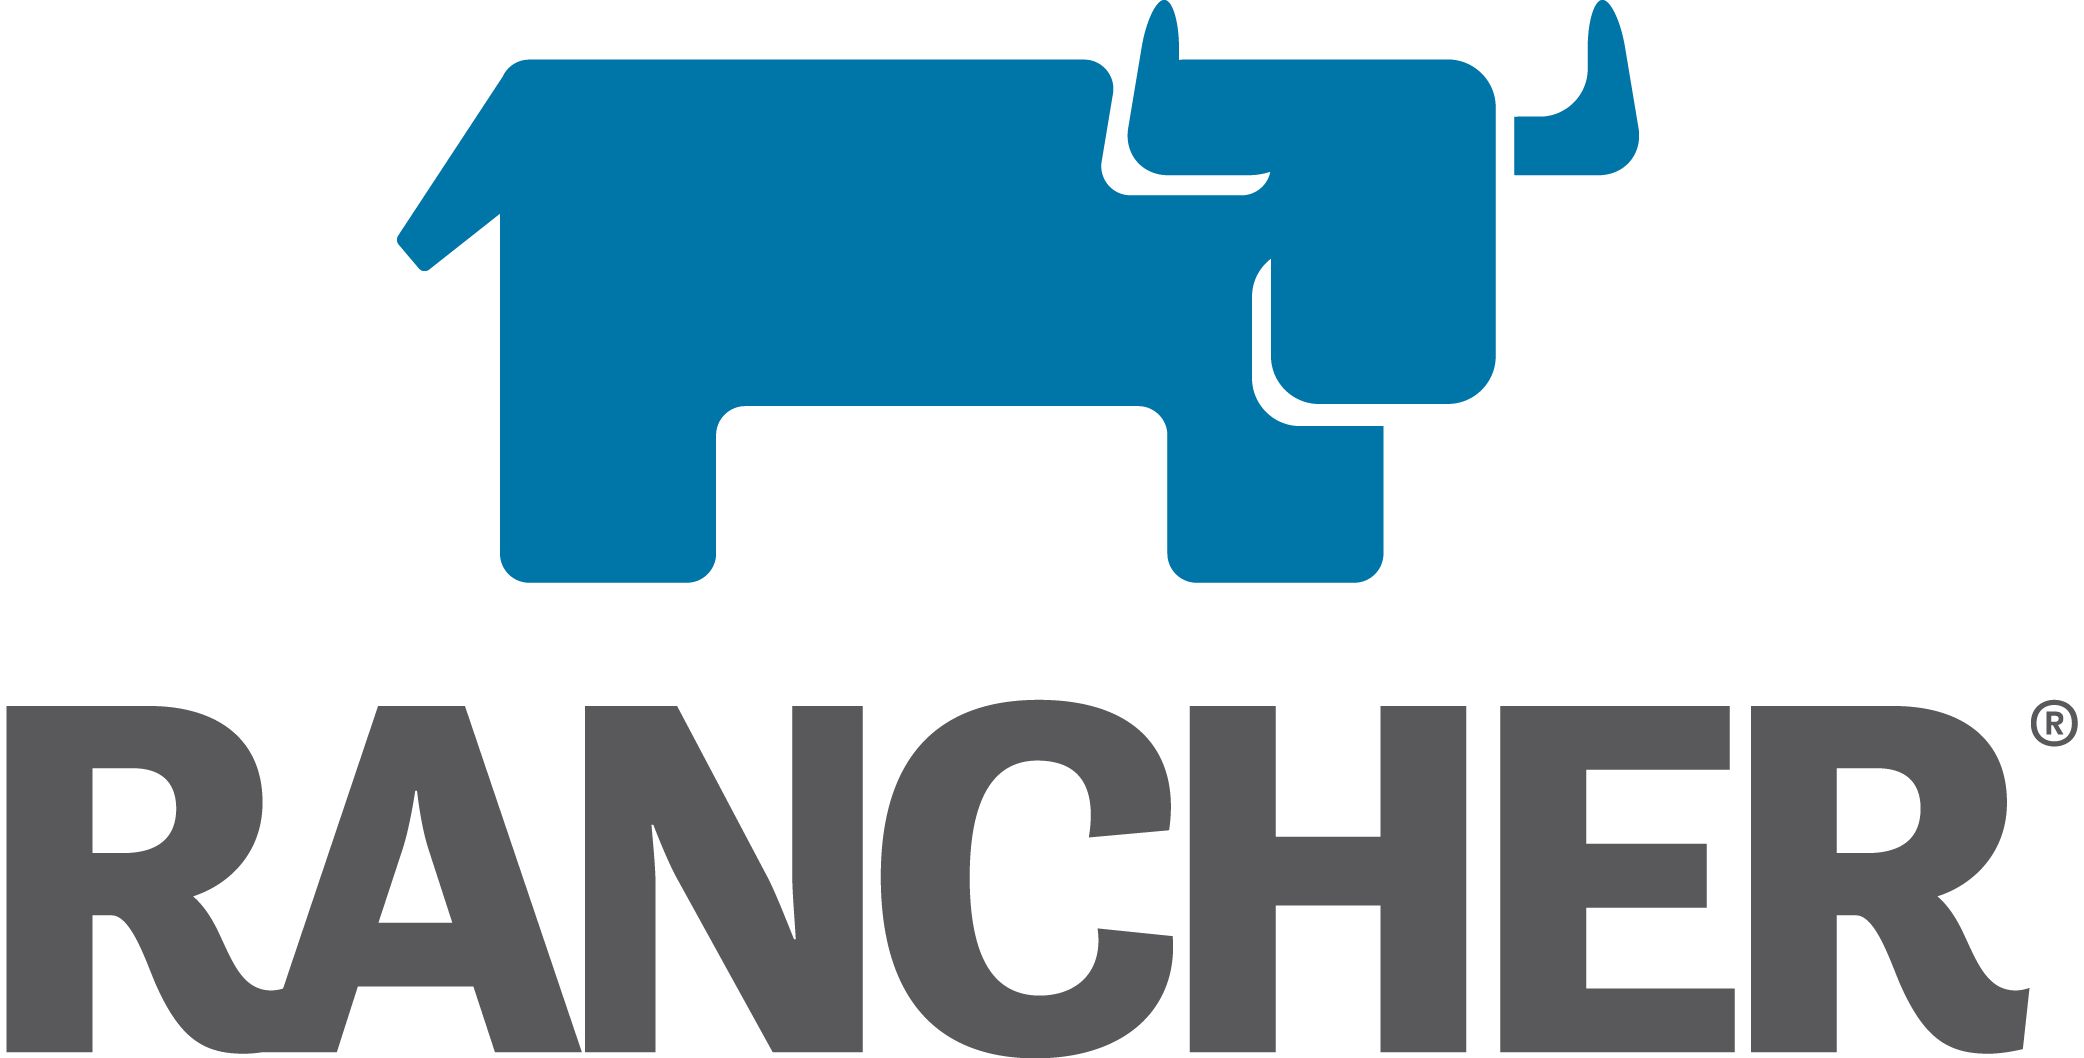 Rancher vendor logo